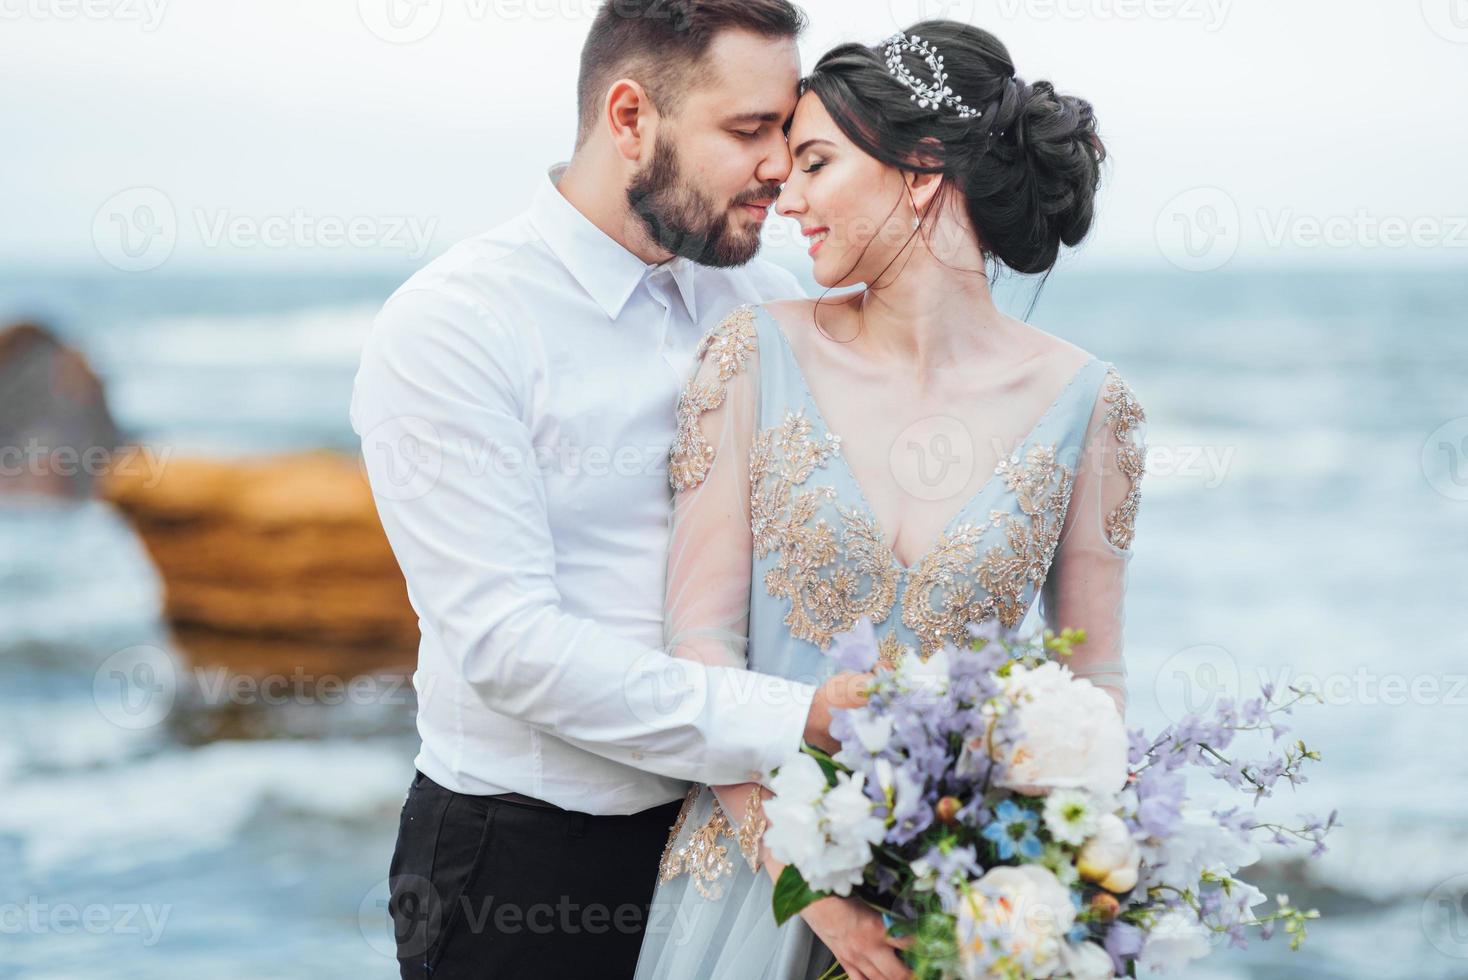 même couple avec une mariée dans une robe bleue à pied photo